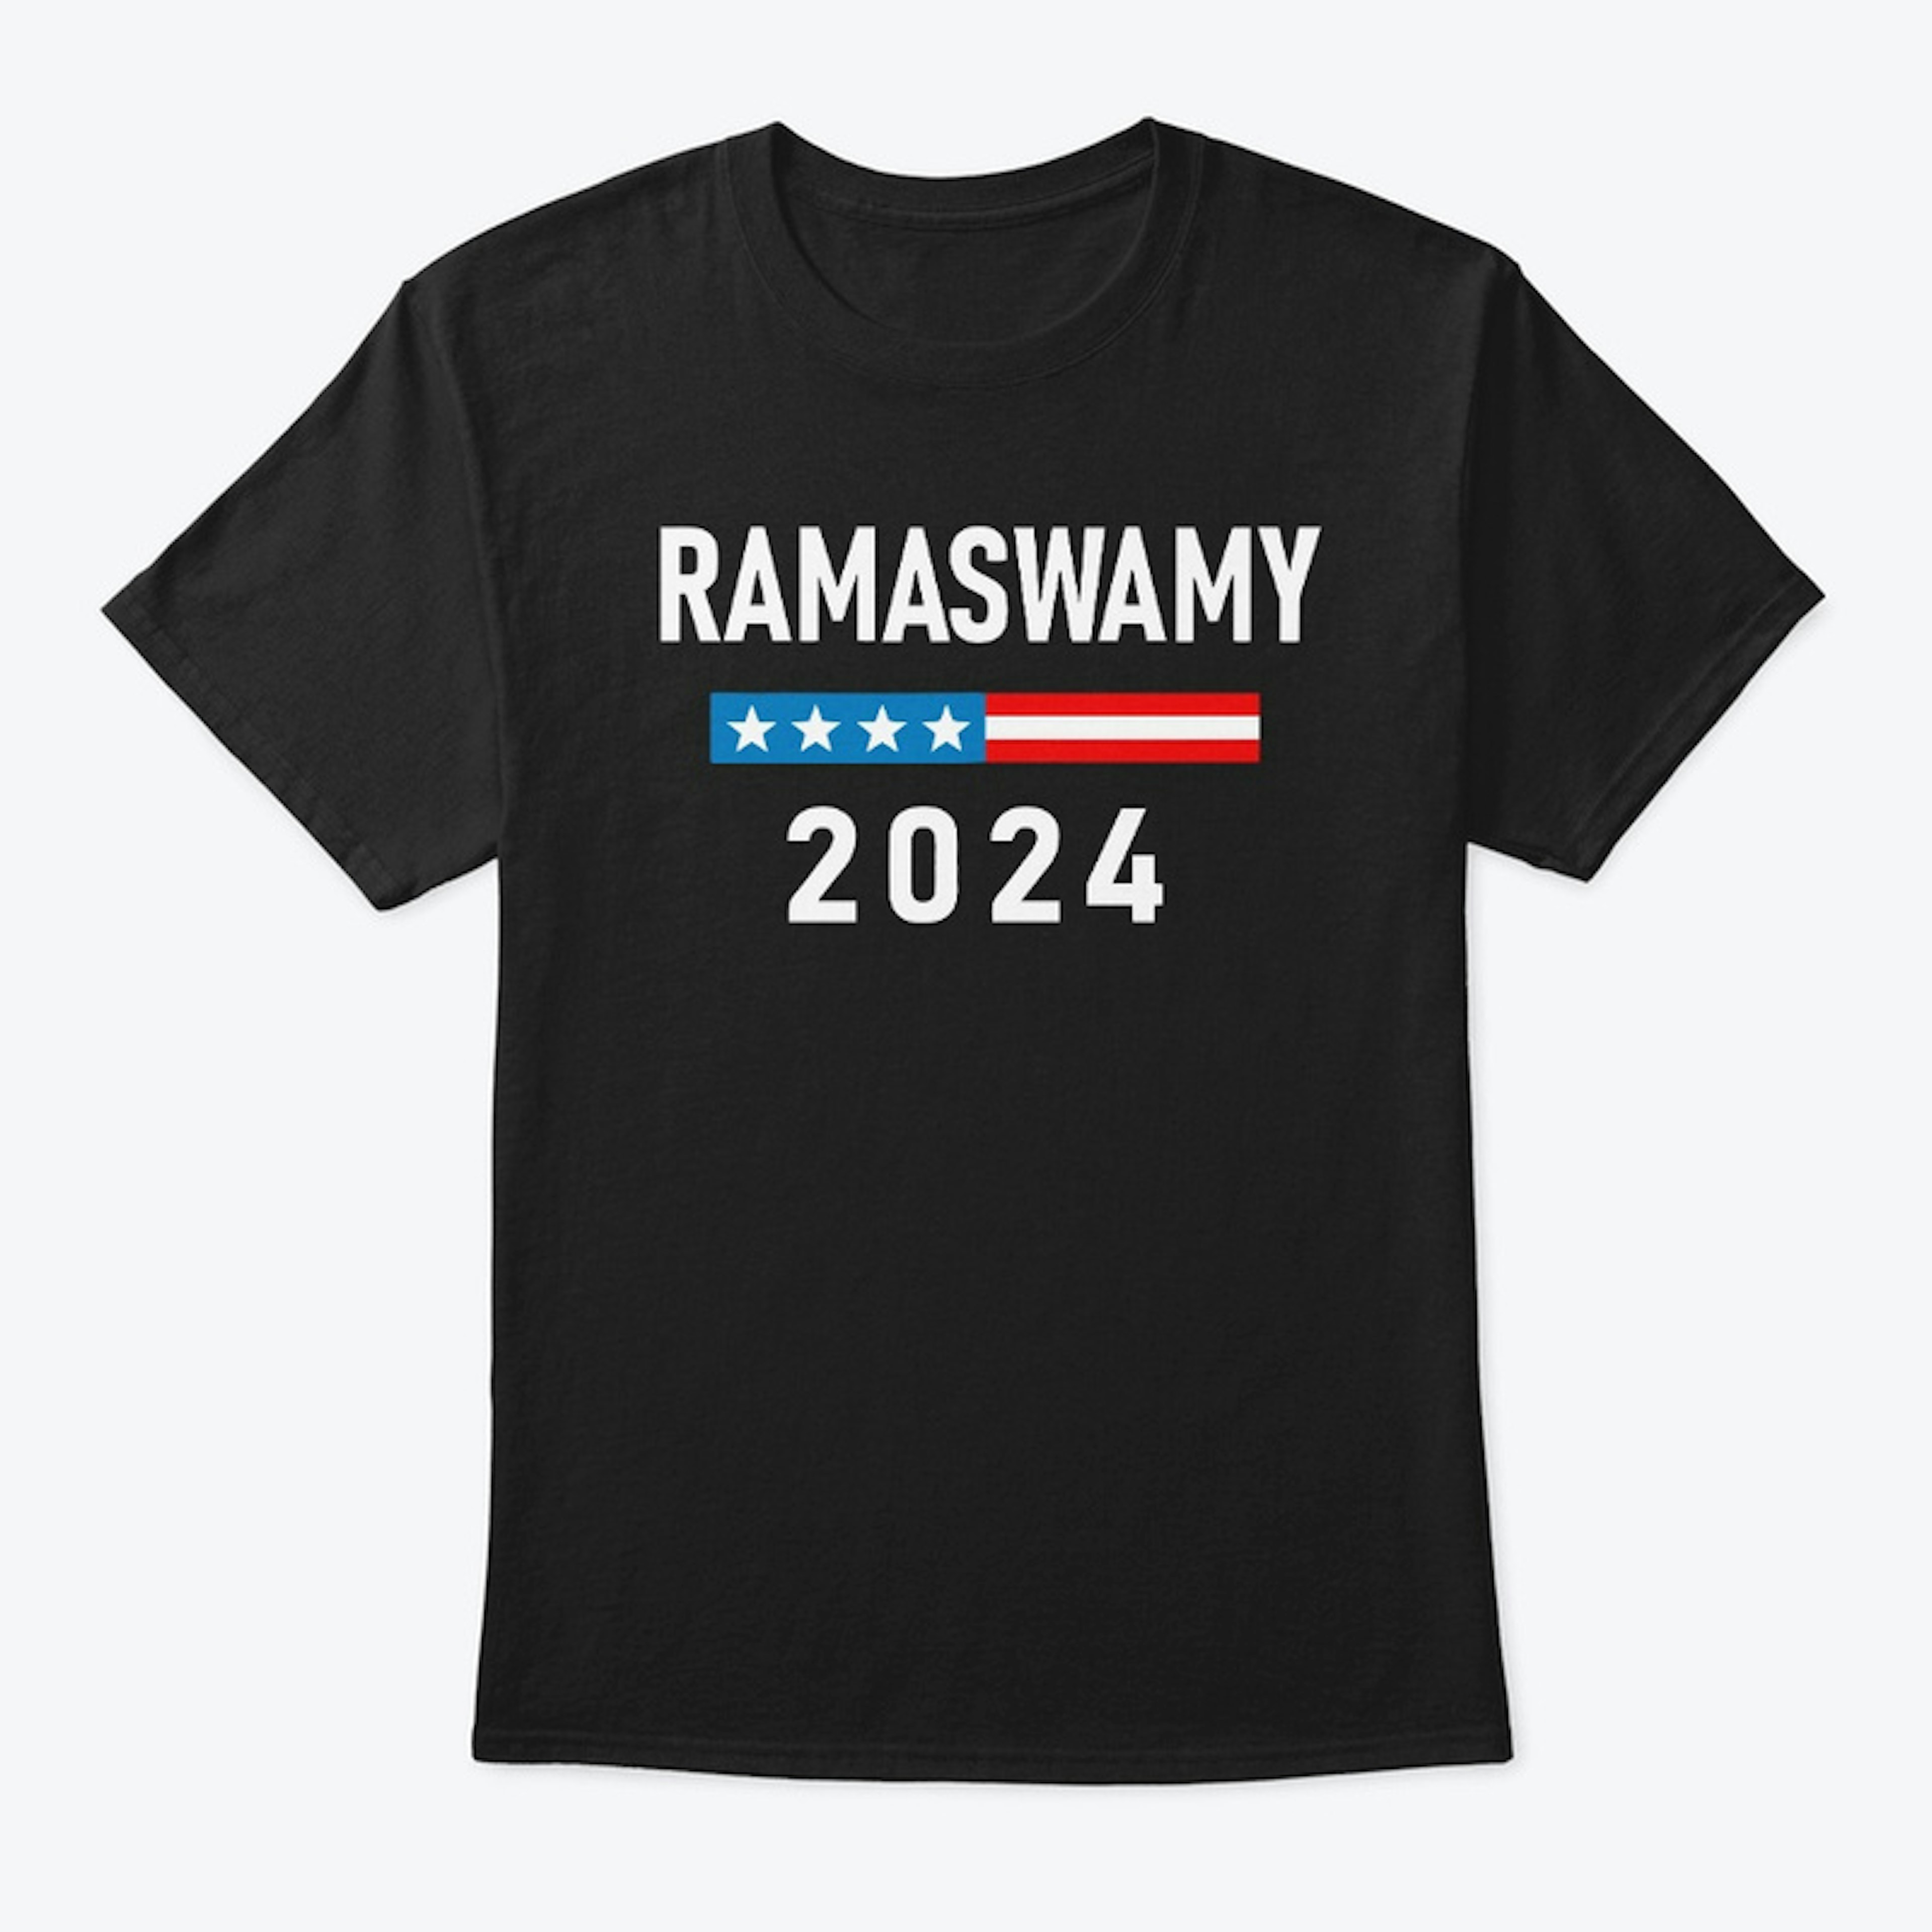 Vivek Ramaswamy 2024 Merch